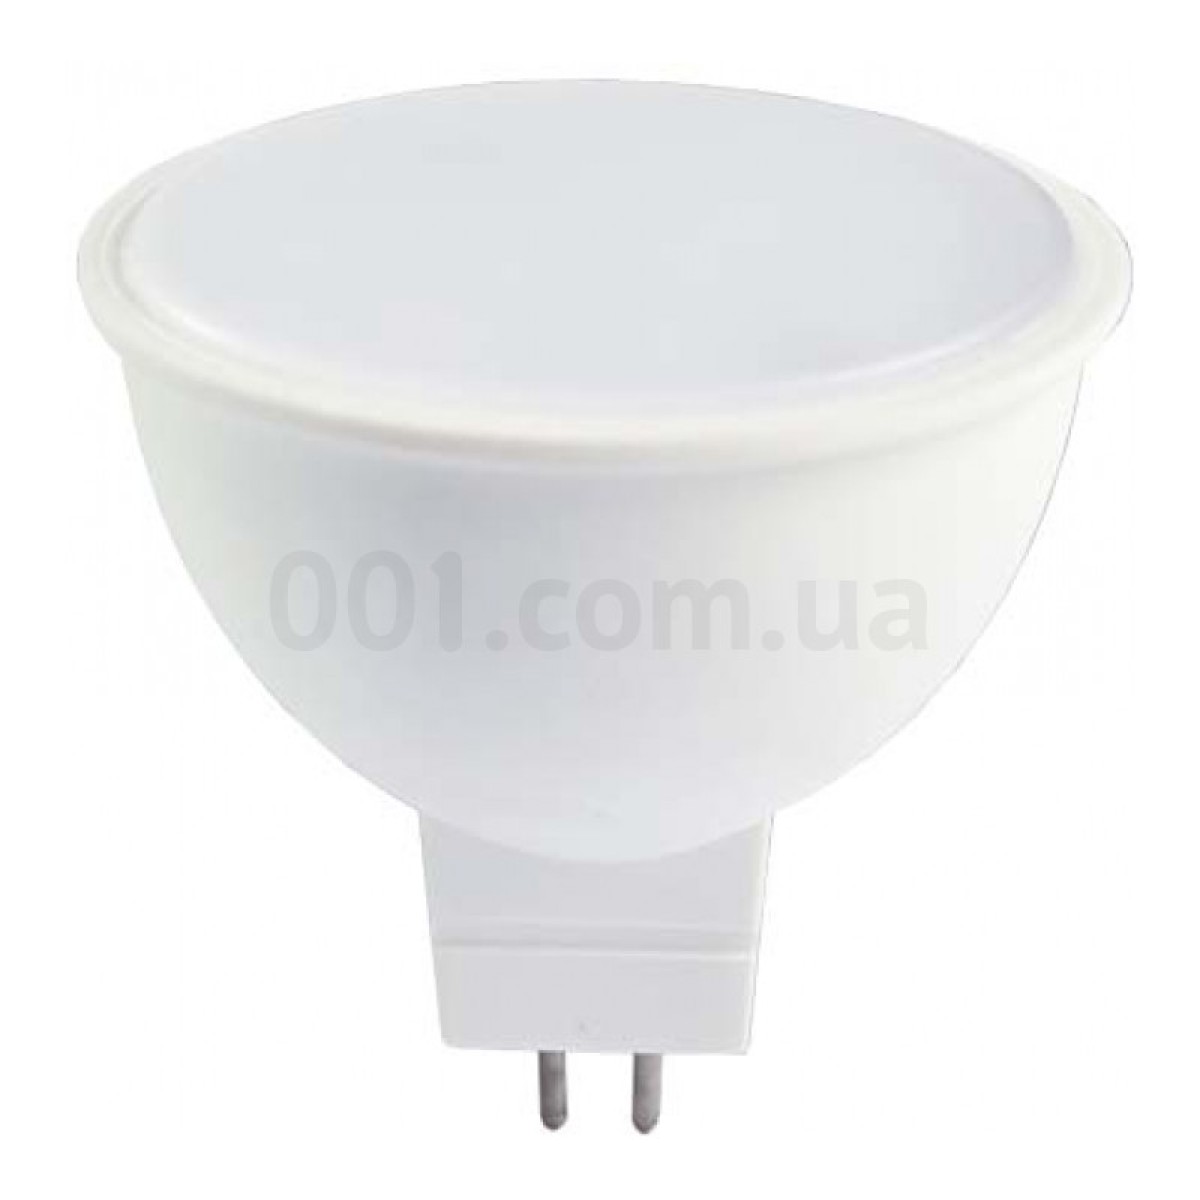 Світлодіодна лампа LB-240 MR16 4Вт 6400K G5.3, Feron 256_256.jpg